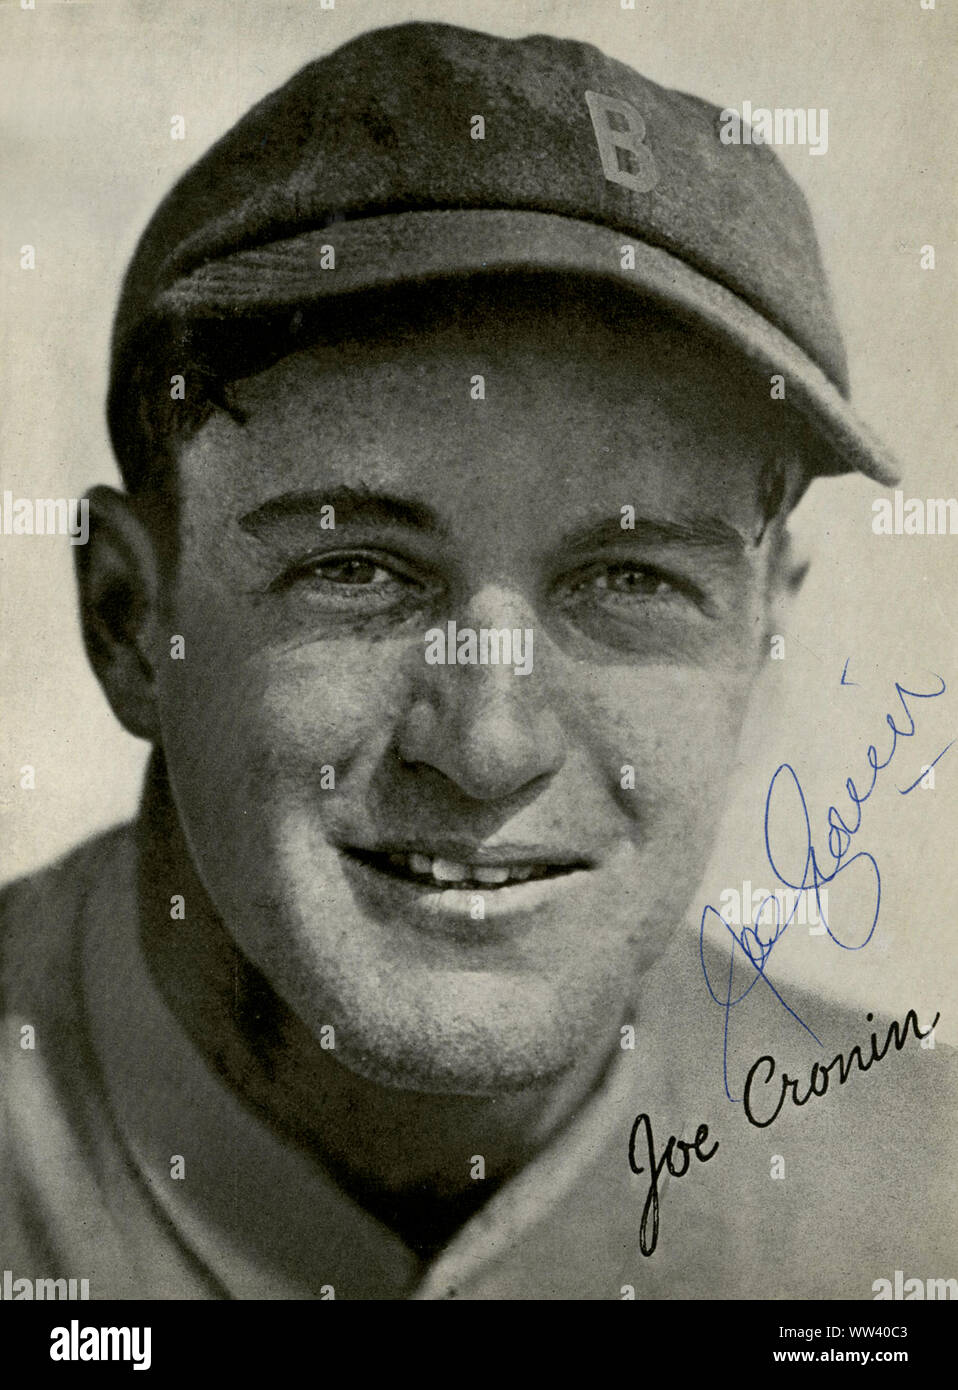 Joe Cronin ist ein Hall of Fame Baseball Spieler vor allem mit den Boston Red Sox, der auch als Manager und Präsident der American League Stockfoto